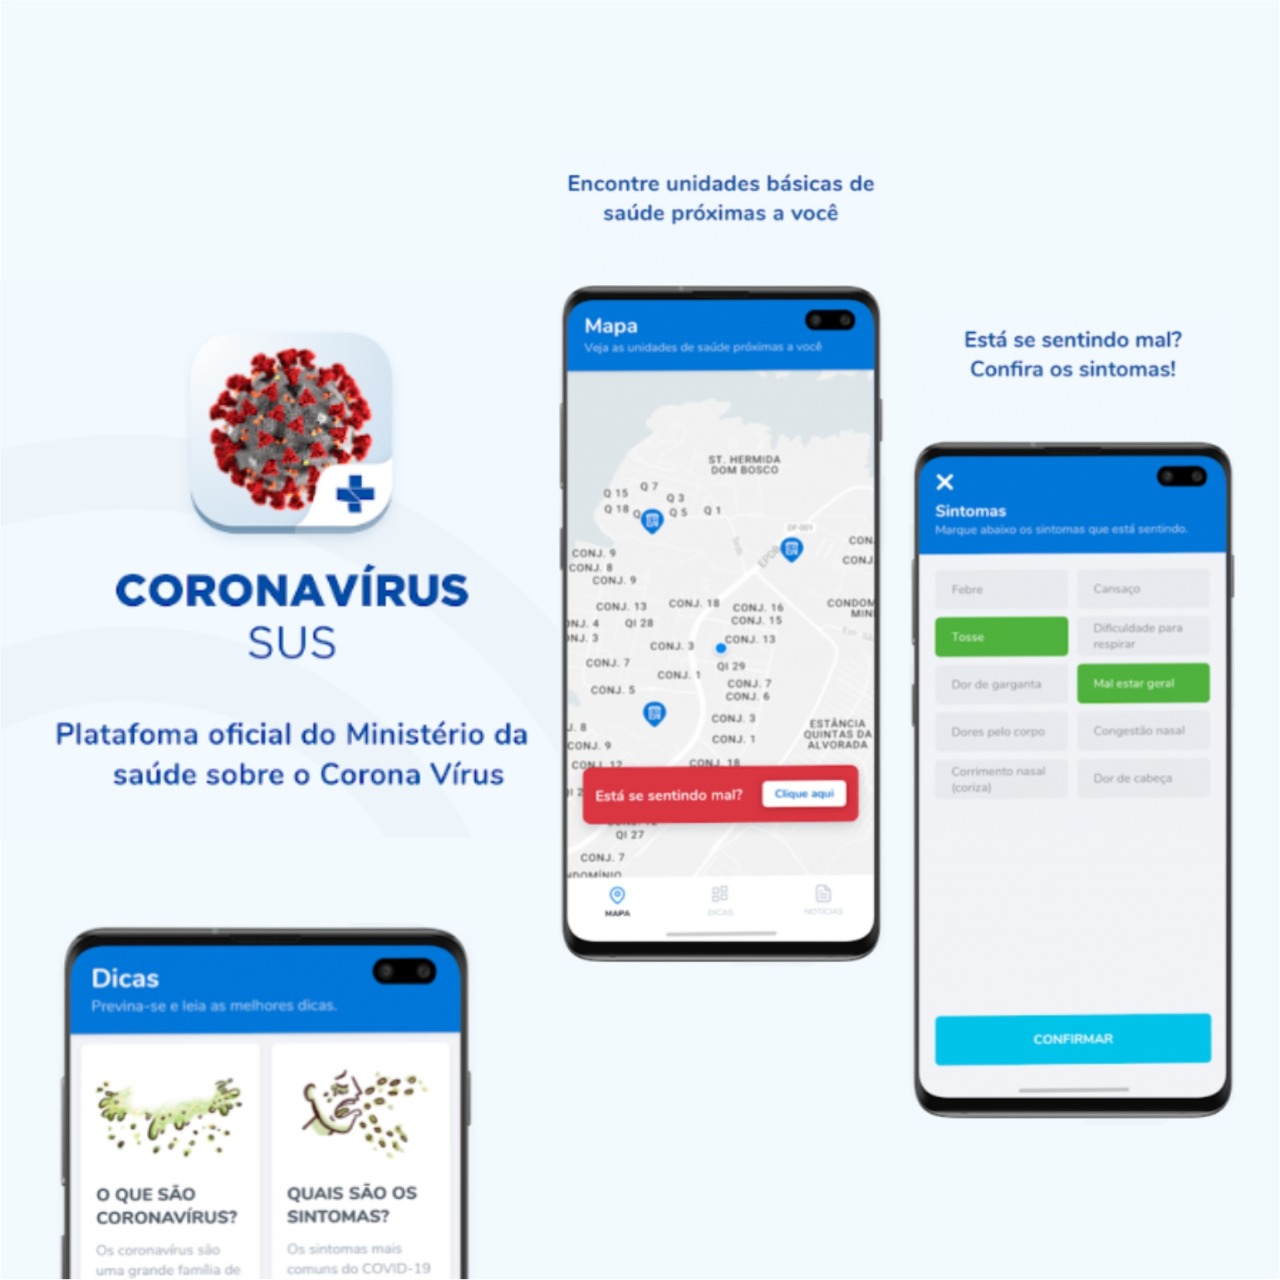 Saiba como se prevenir contra o Coronavírus